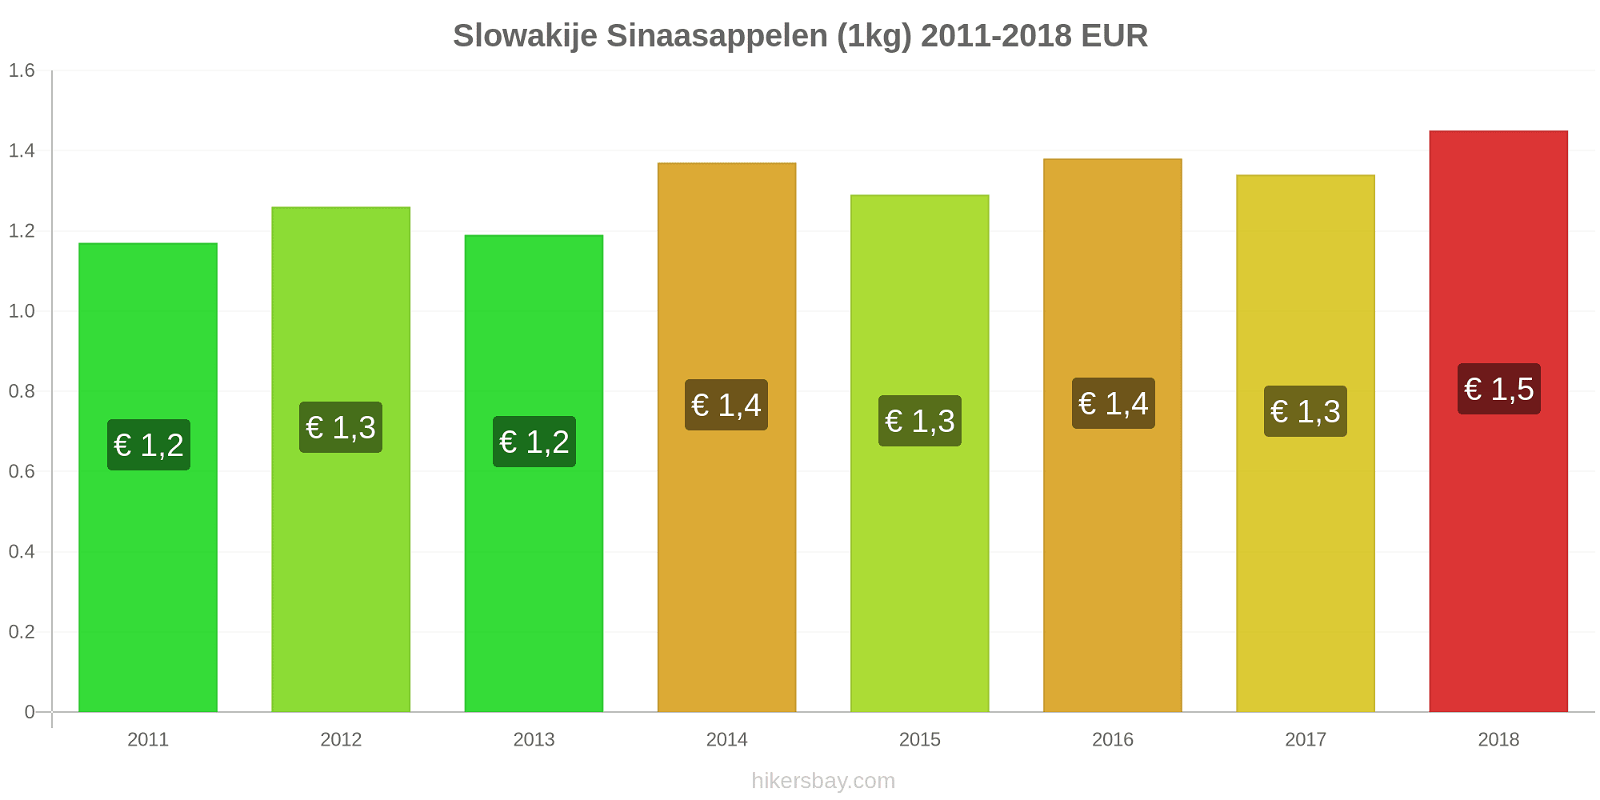 Slowakije prijswijzigingen Sinaasappels (1kg) hikersbay.com